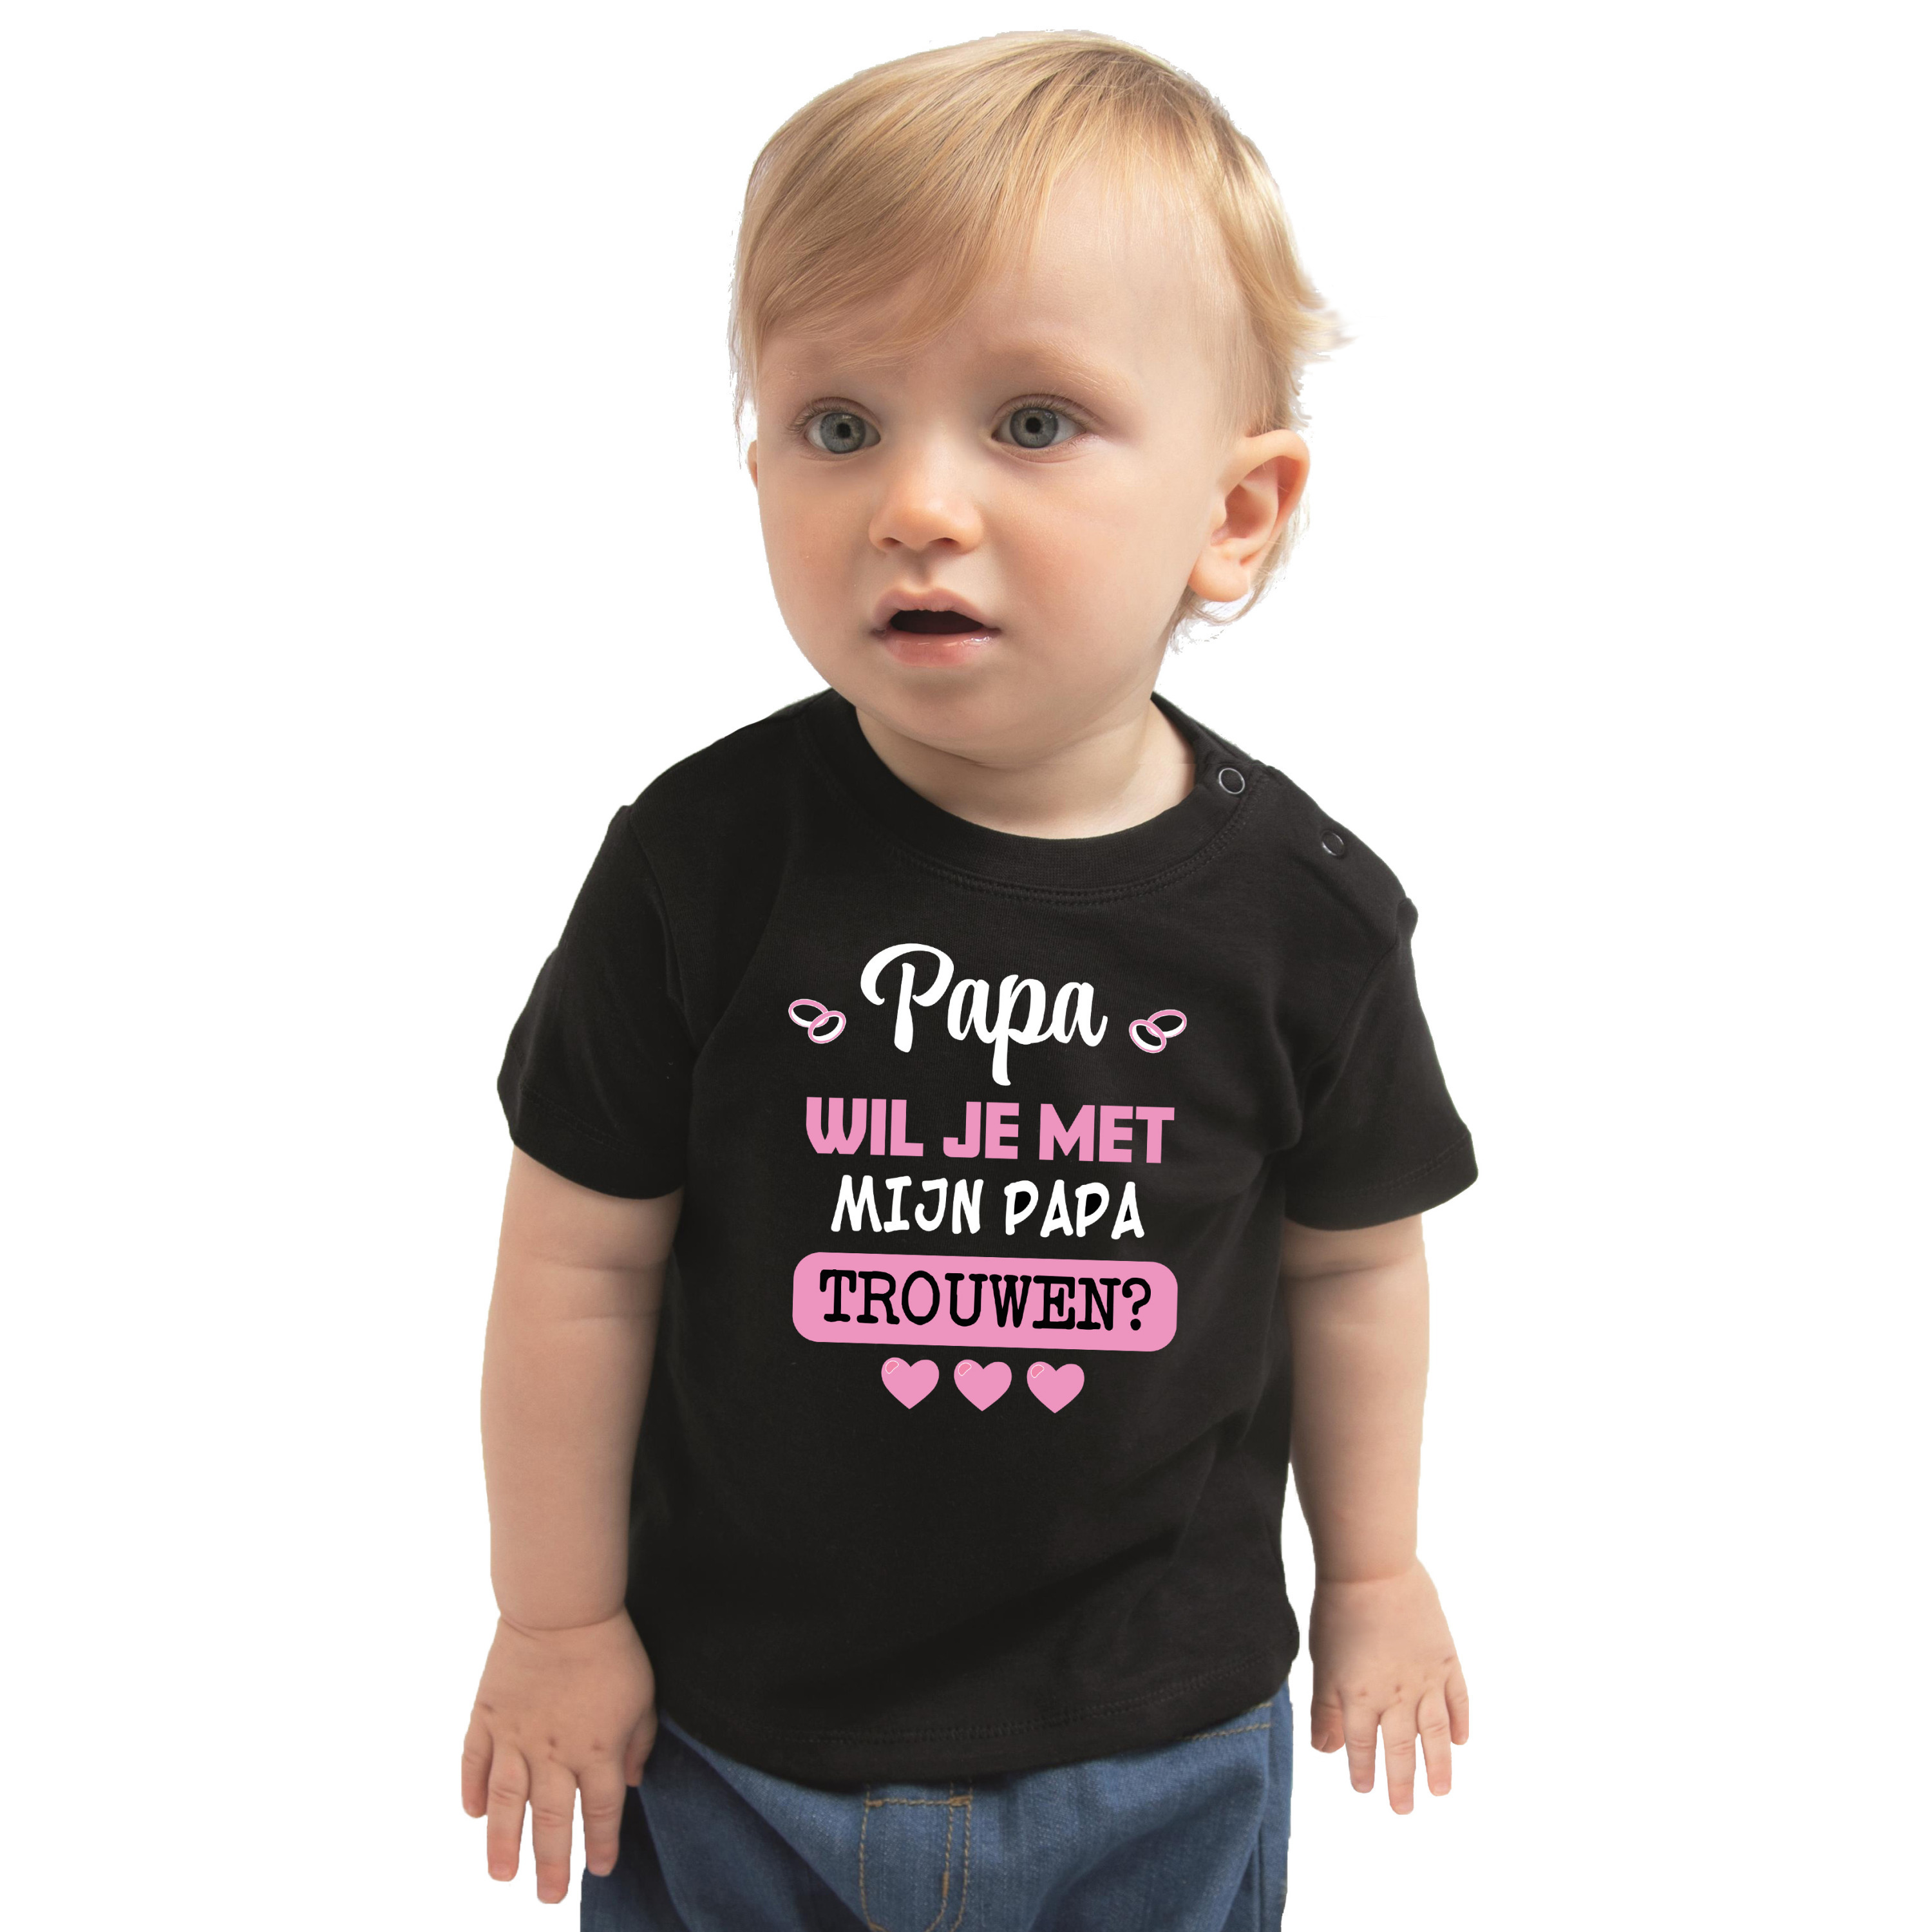 Huwelijksaanzoek baby t-shirt - Papa/Papa - zwart - pride bruiloft/trouwen